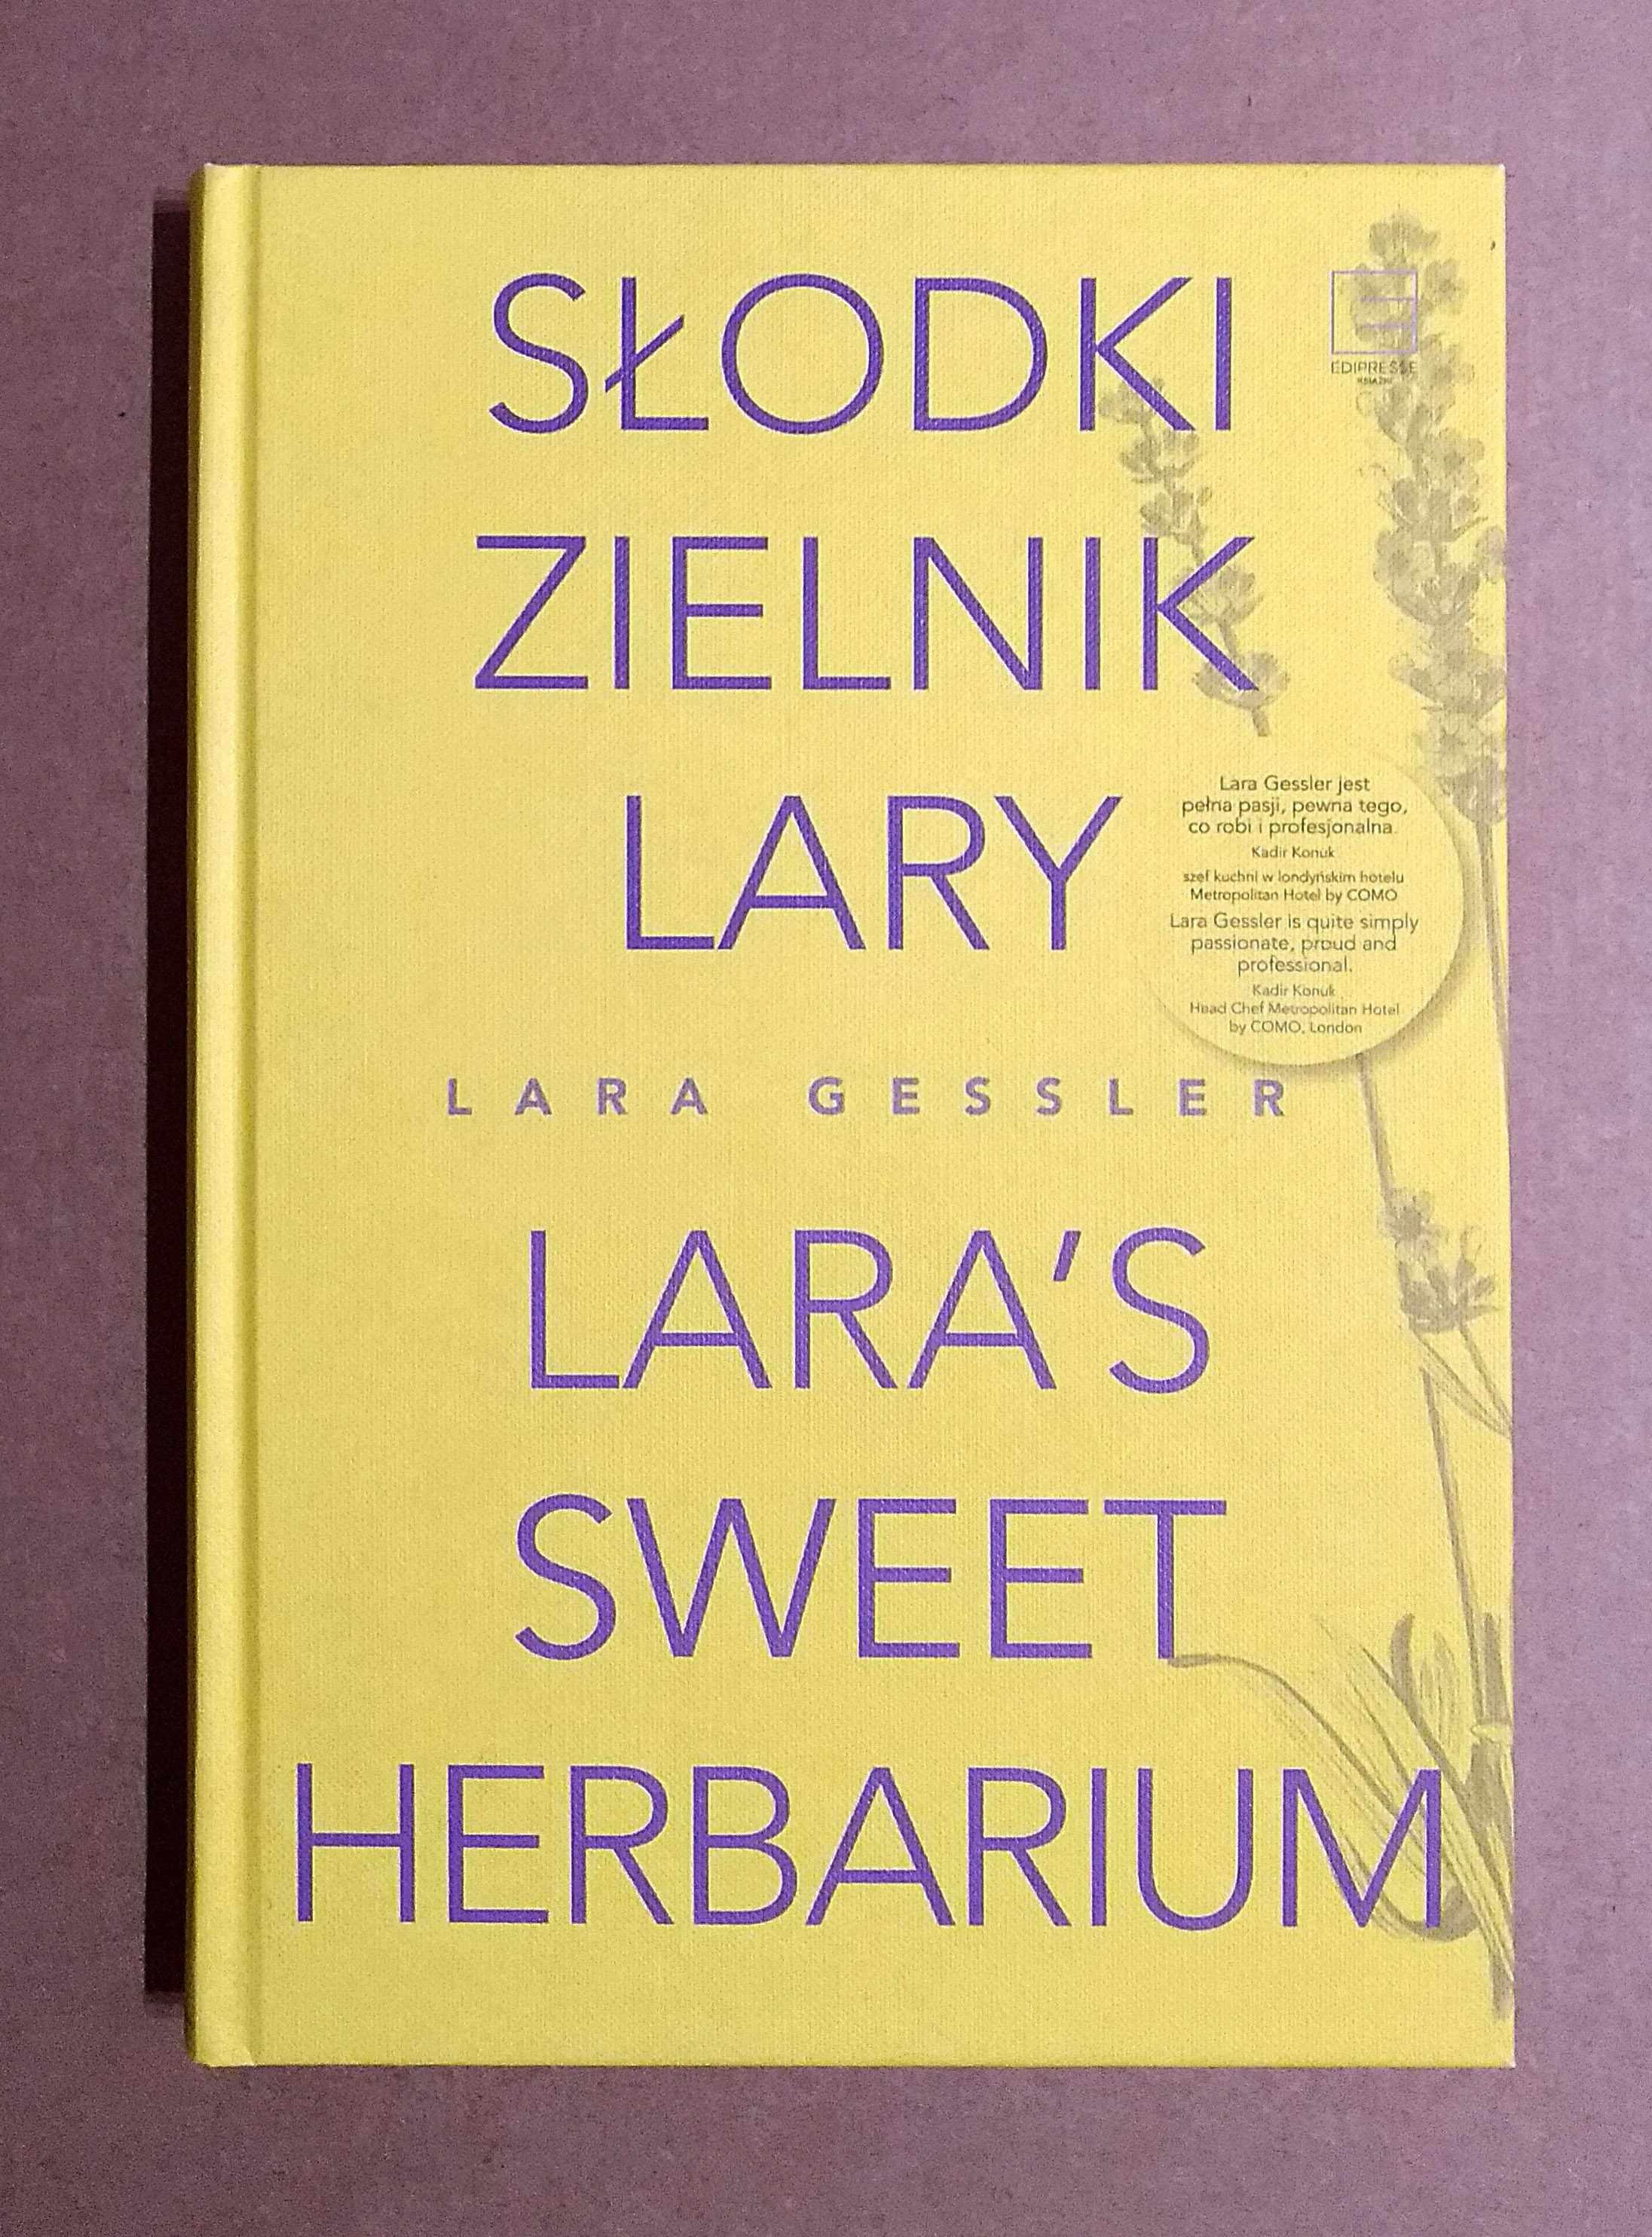 Słodki zielnik Lary - Lara Gessler (nowa)